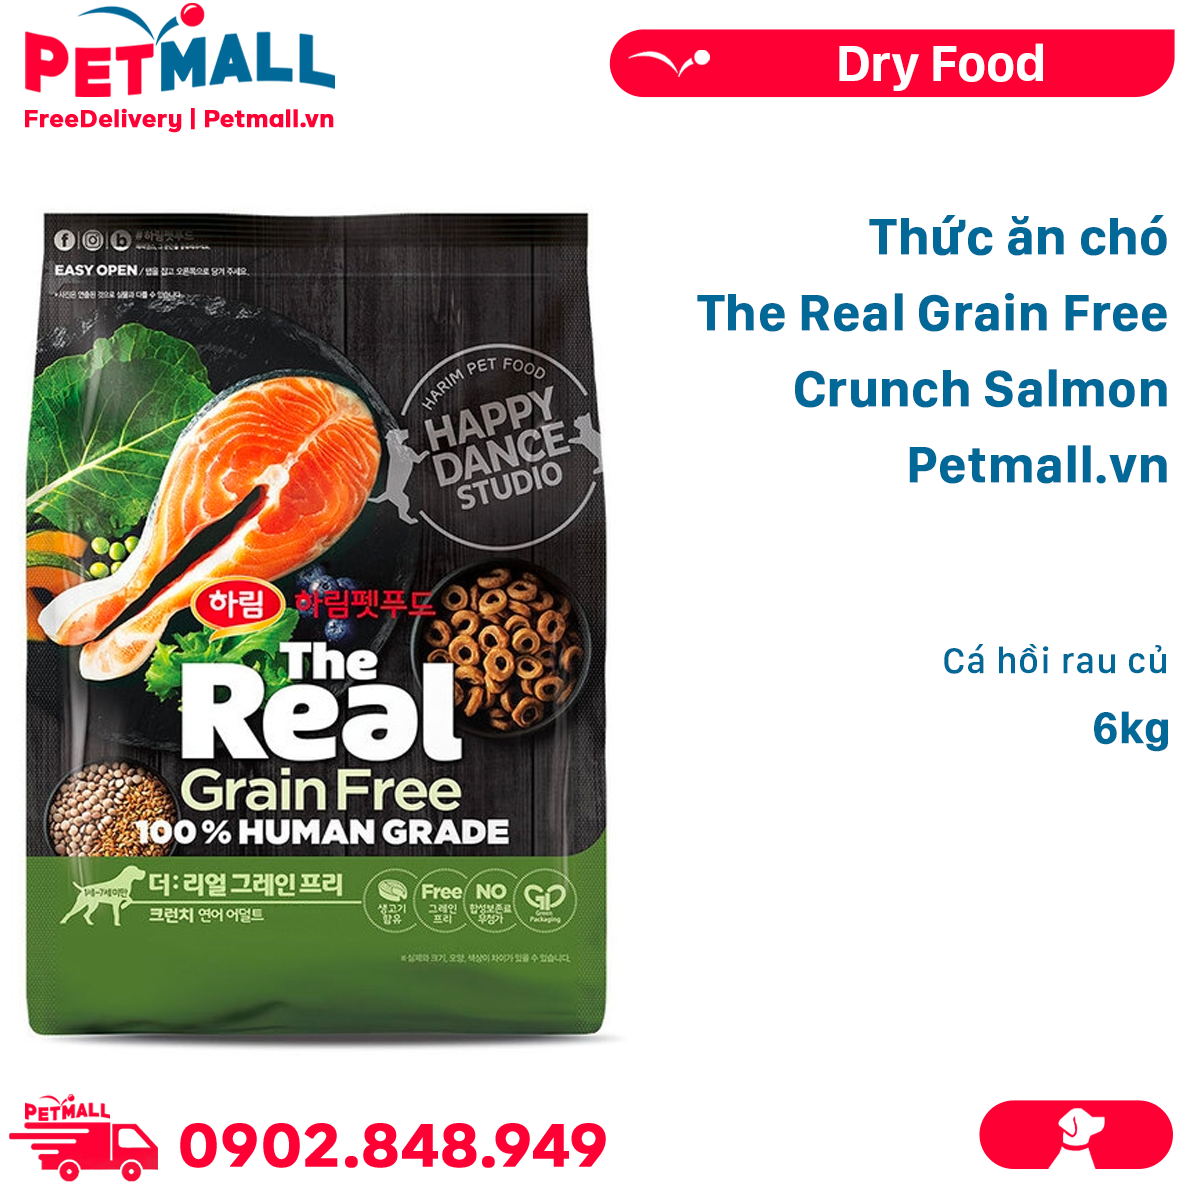 Thức ăn chó The Real Grain Free Crunch Salmon 6kg - Cá hồi rau củ Petmall